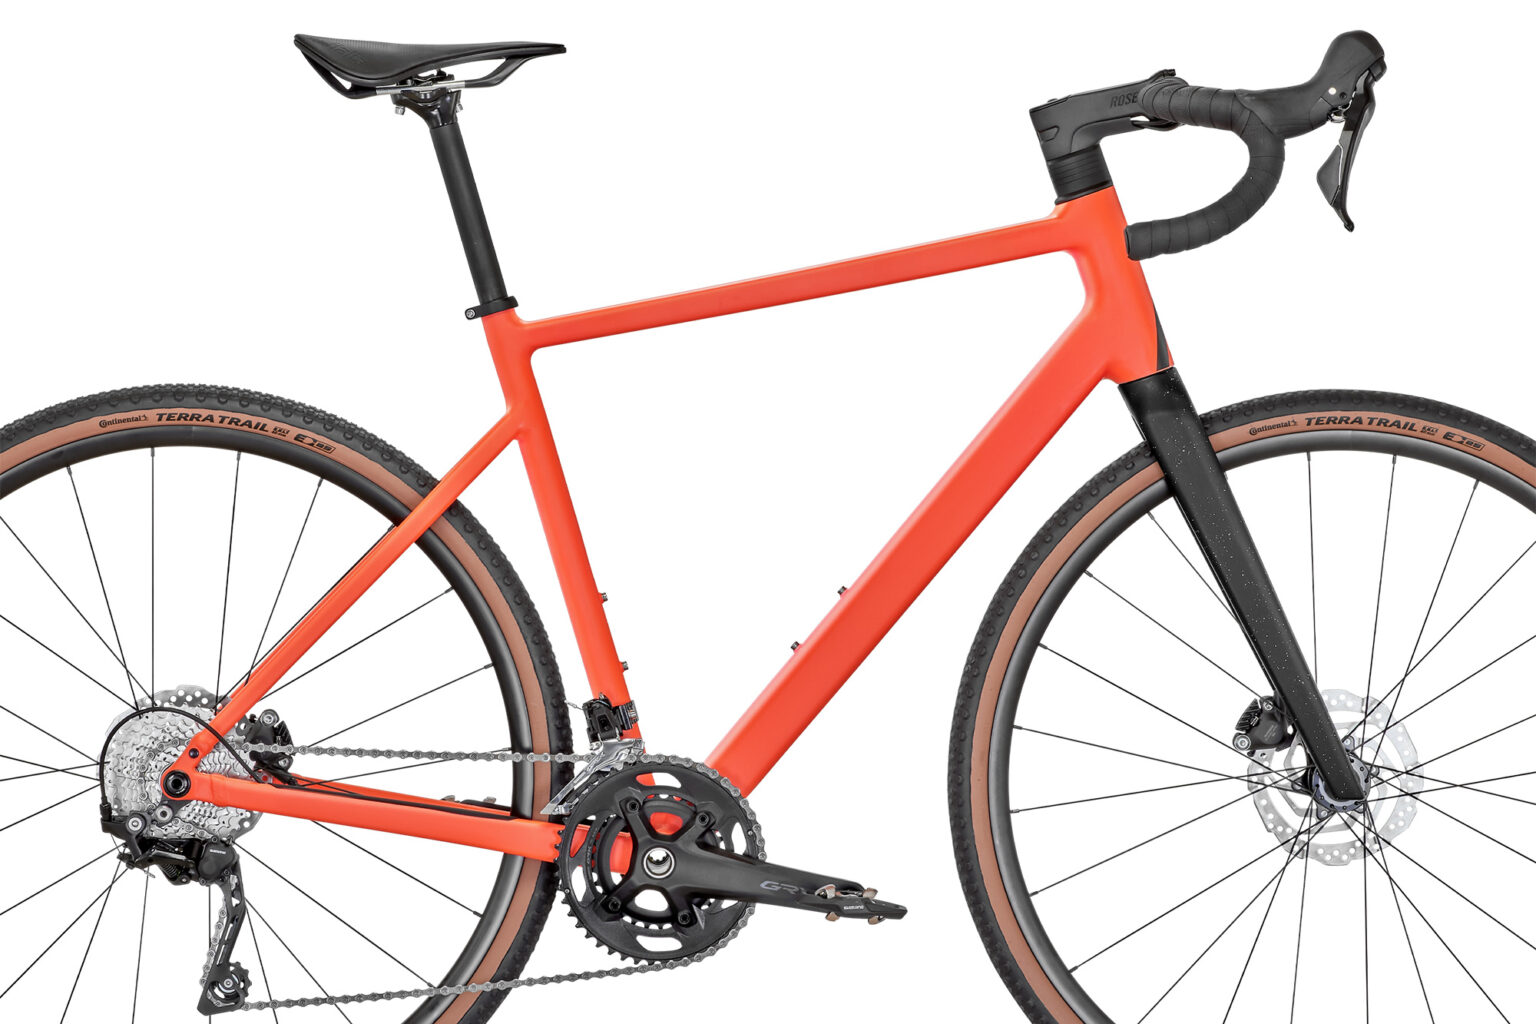 Rose Blend affordable all-in-one aluminum alloy road AND gravel bike, framseset detail